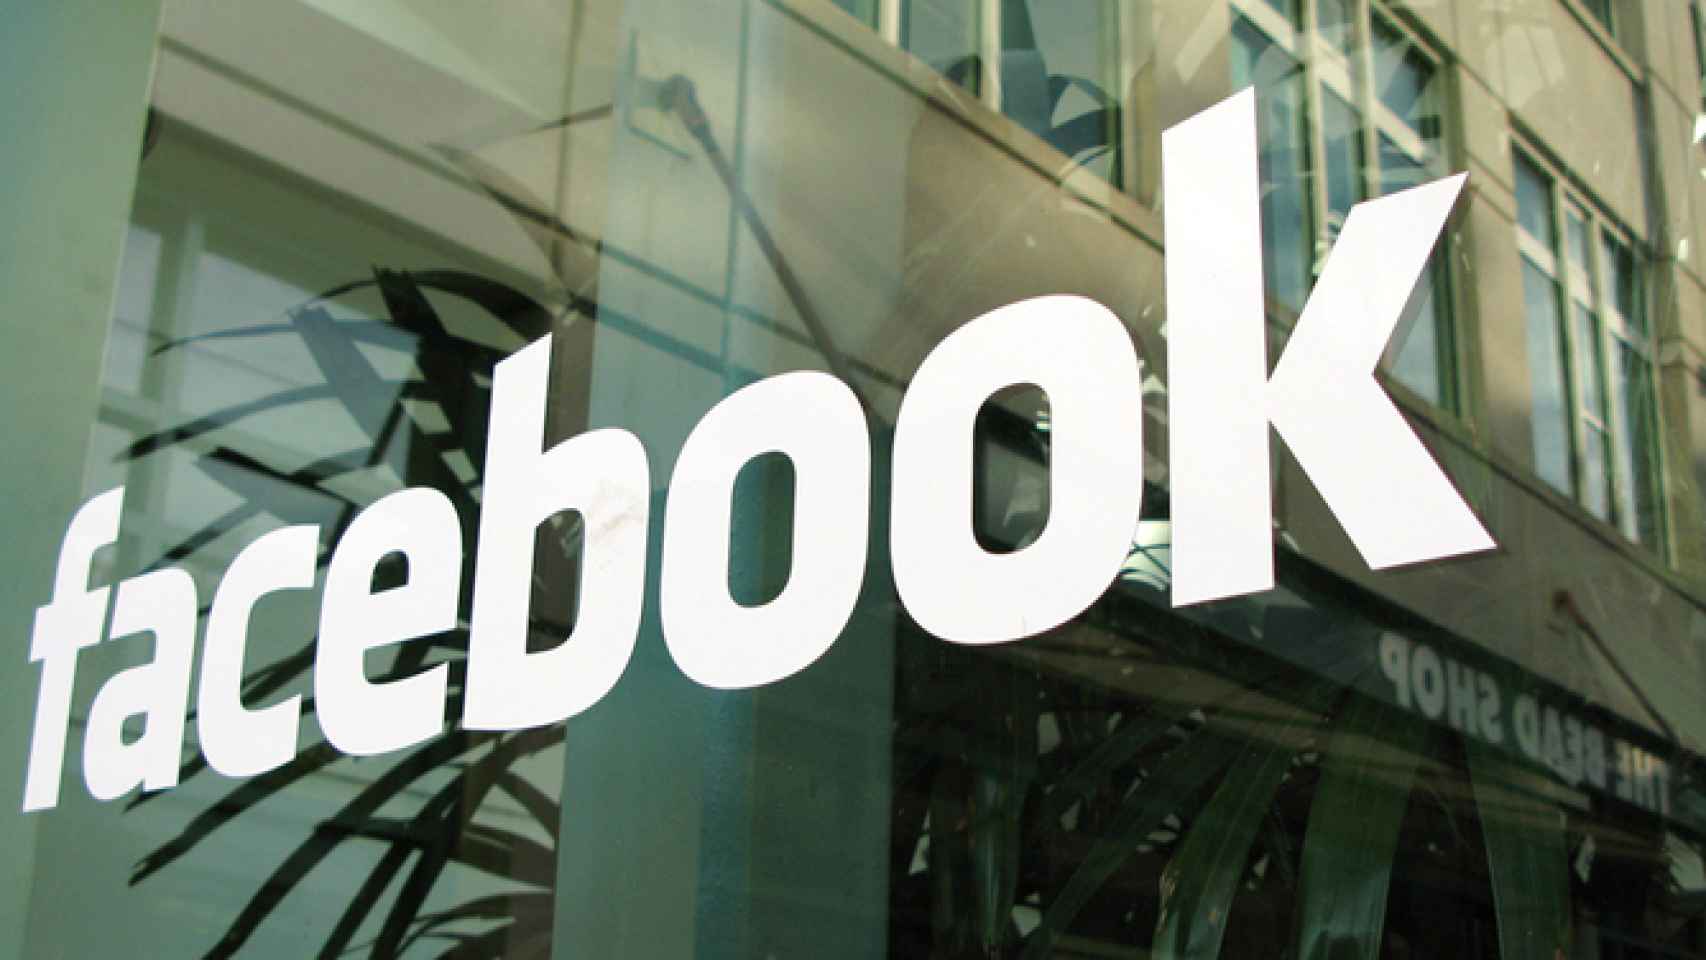 Facebook mostrará más noticias de tus amigos cercanos y menos sobre marcas